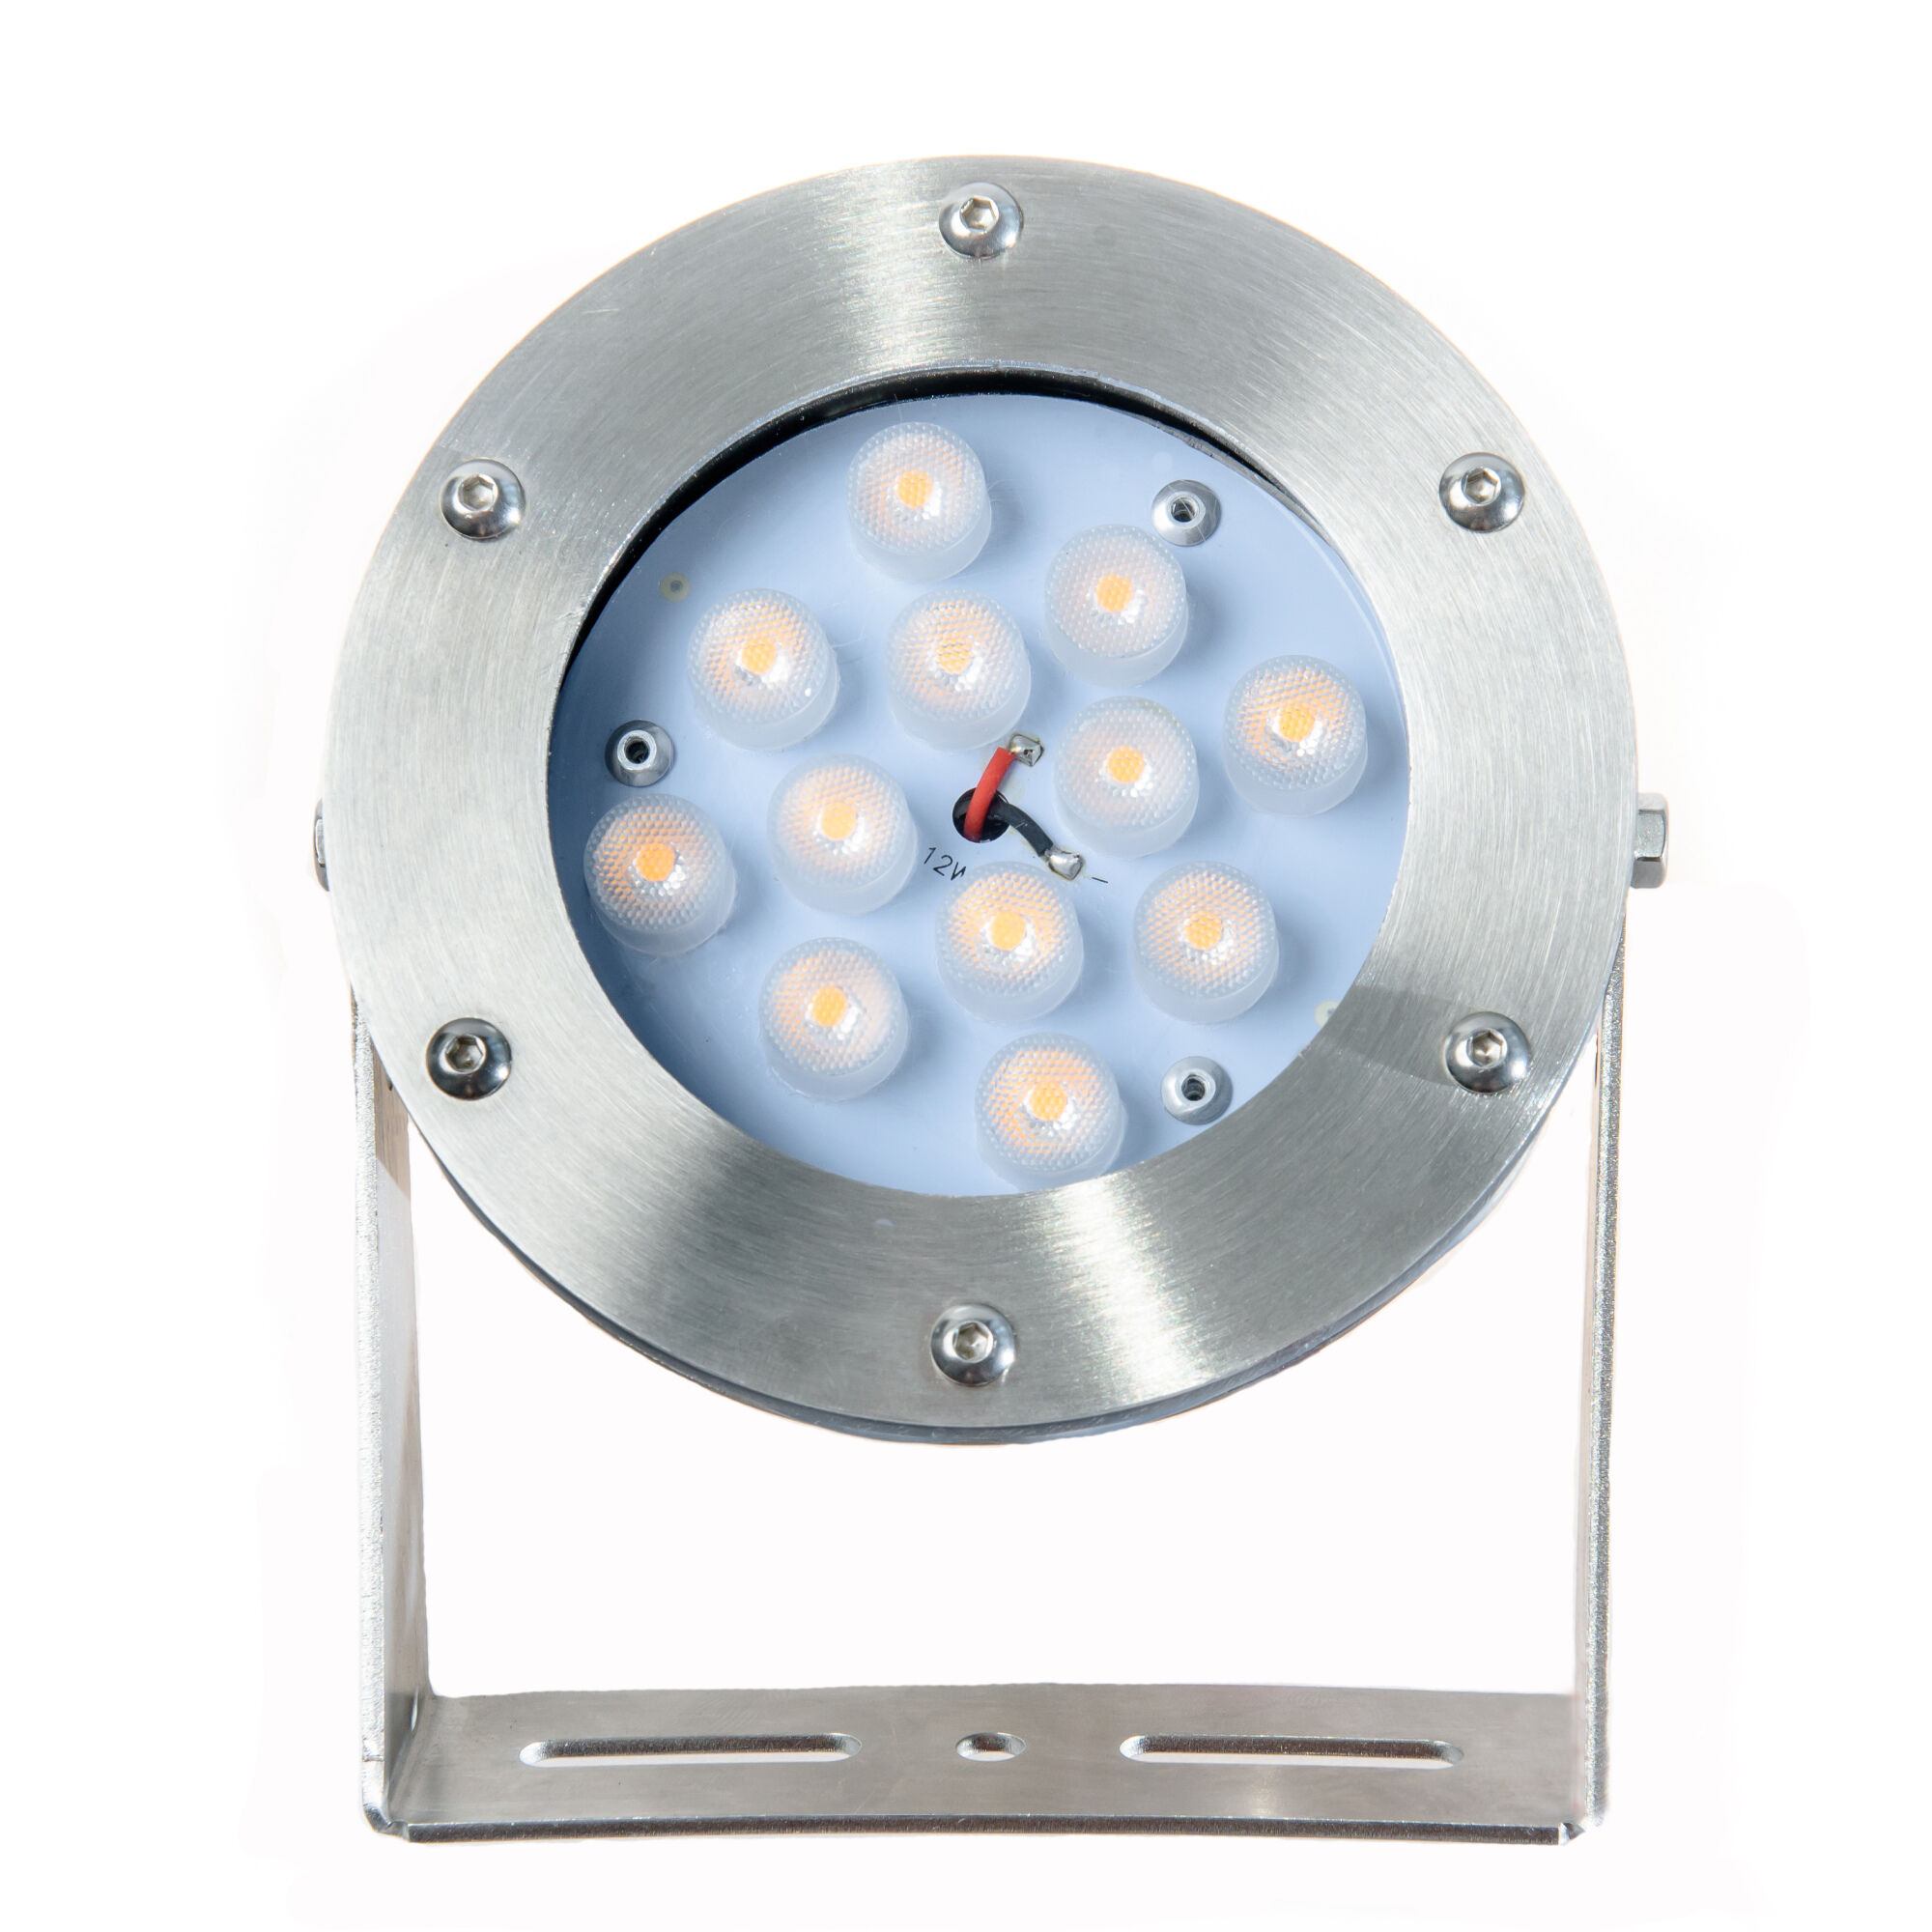 Архитектурный подводный светодиодный светильник 12 Вт, 12 Вольт, IP68